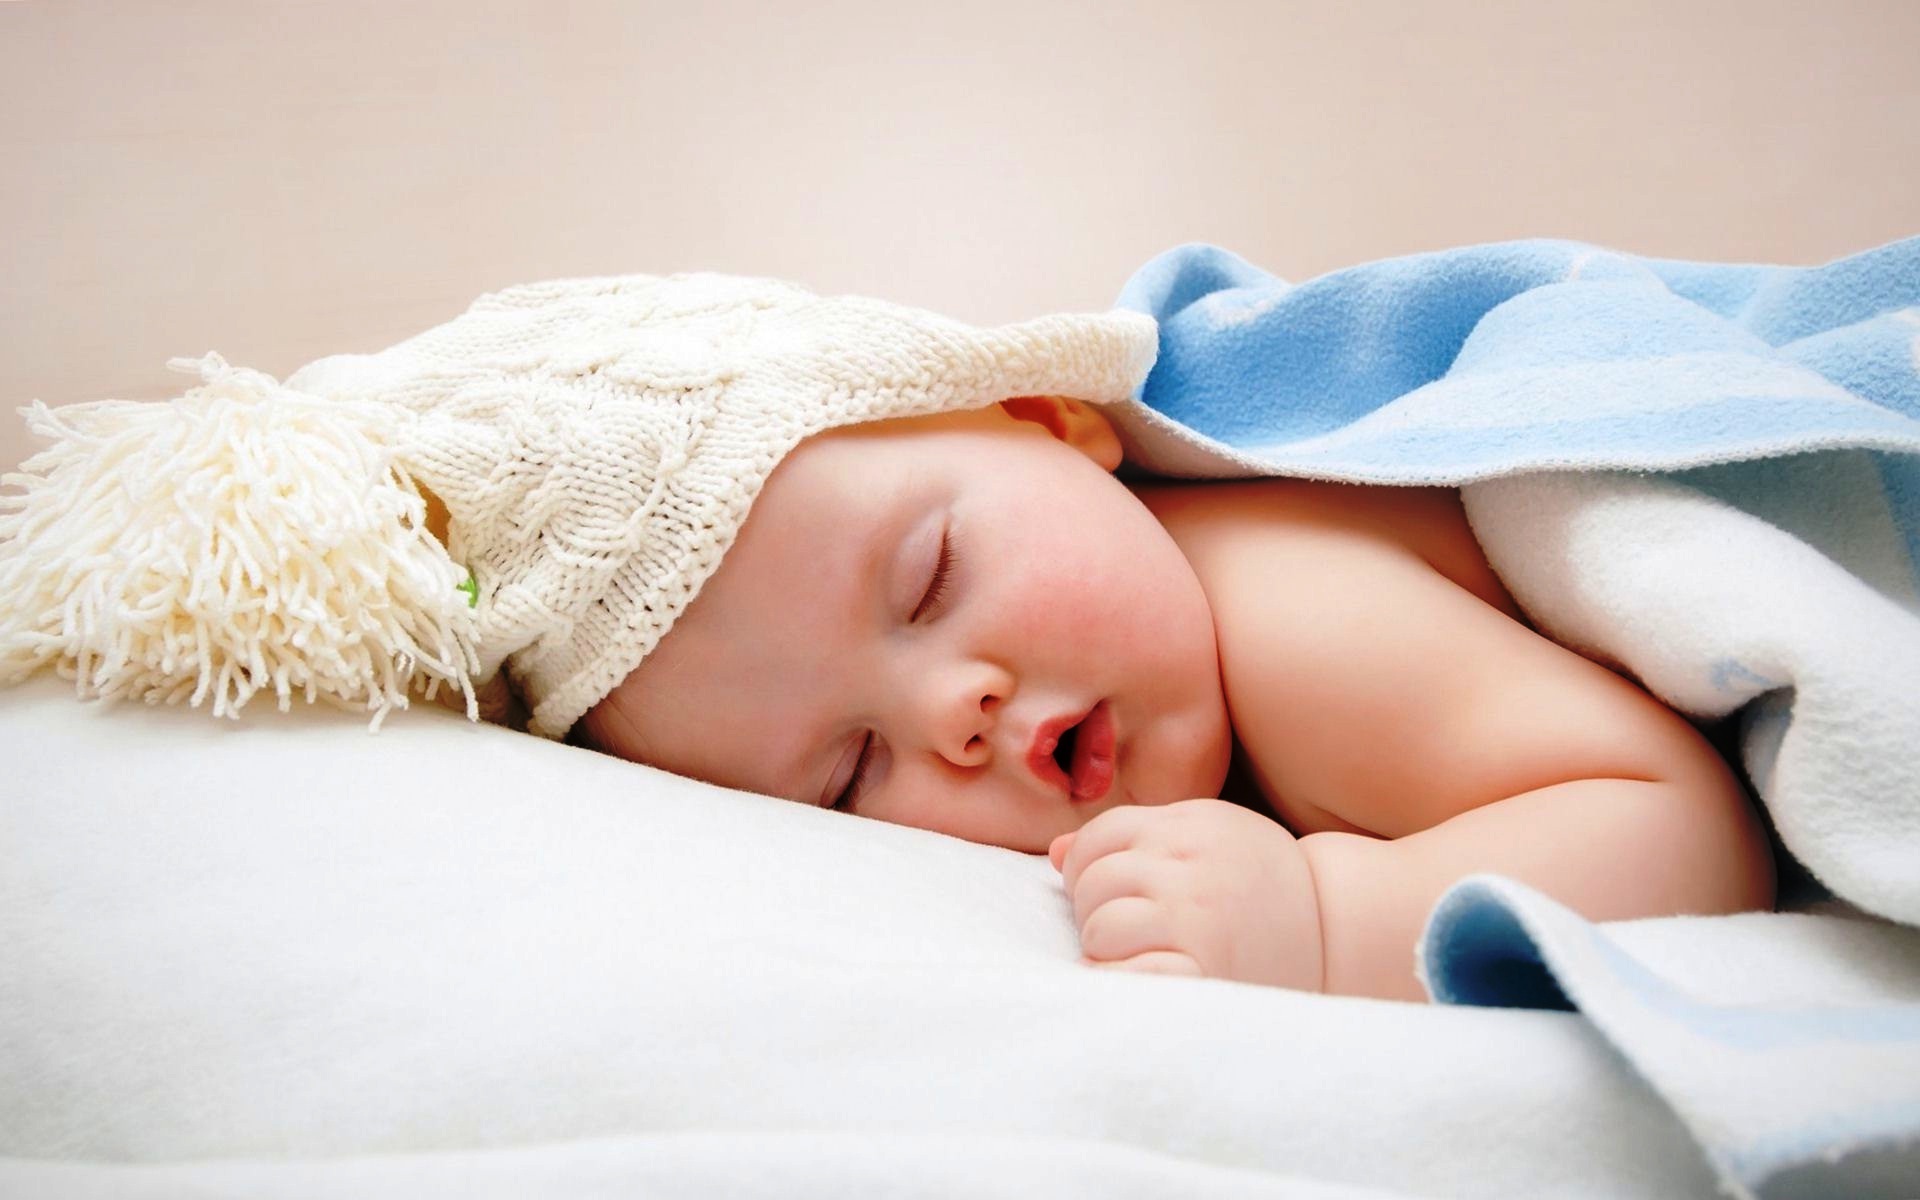 bonne nuit bébé fond d'écran,enfant,bébé,photographier,dormir,sieste